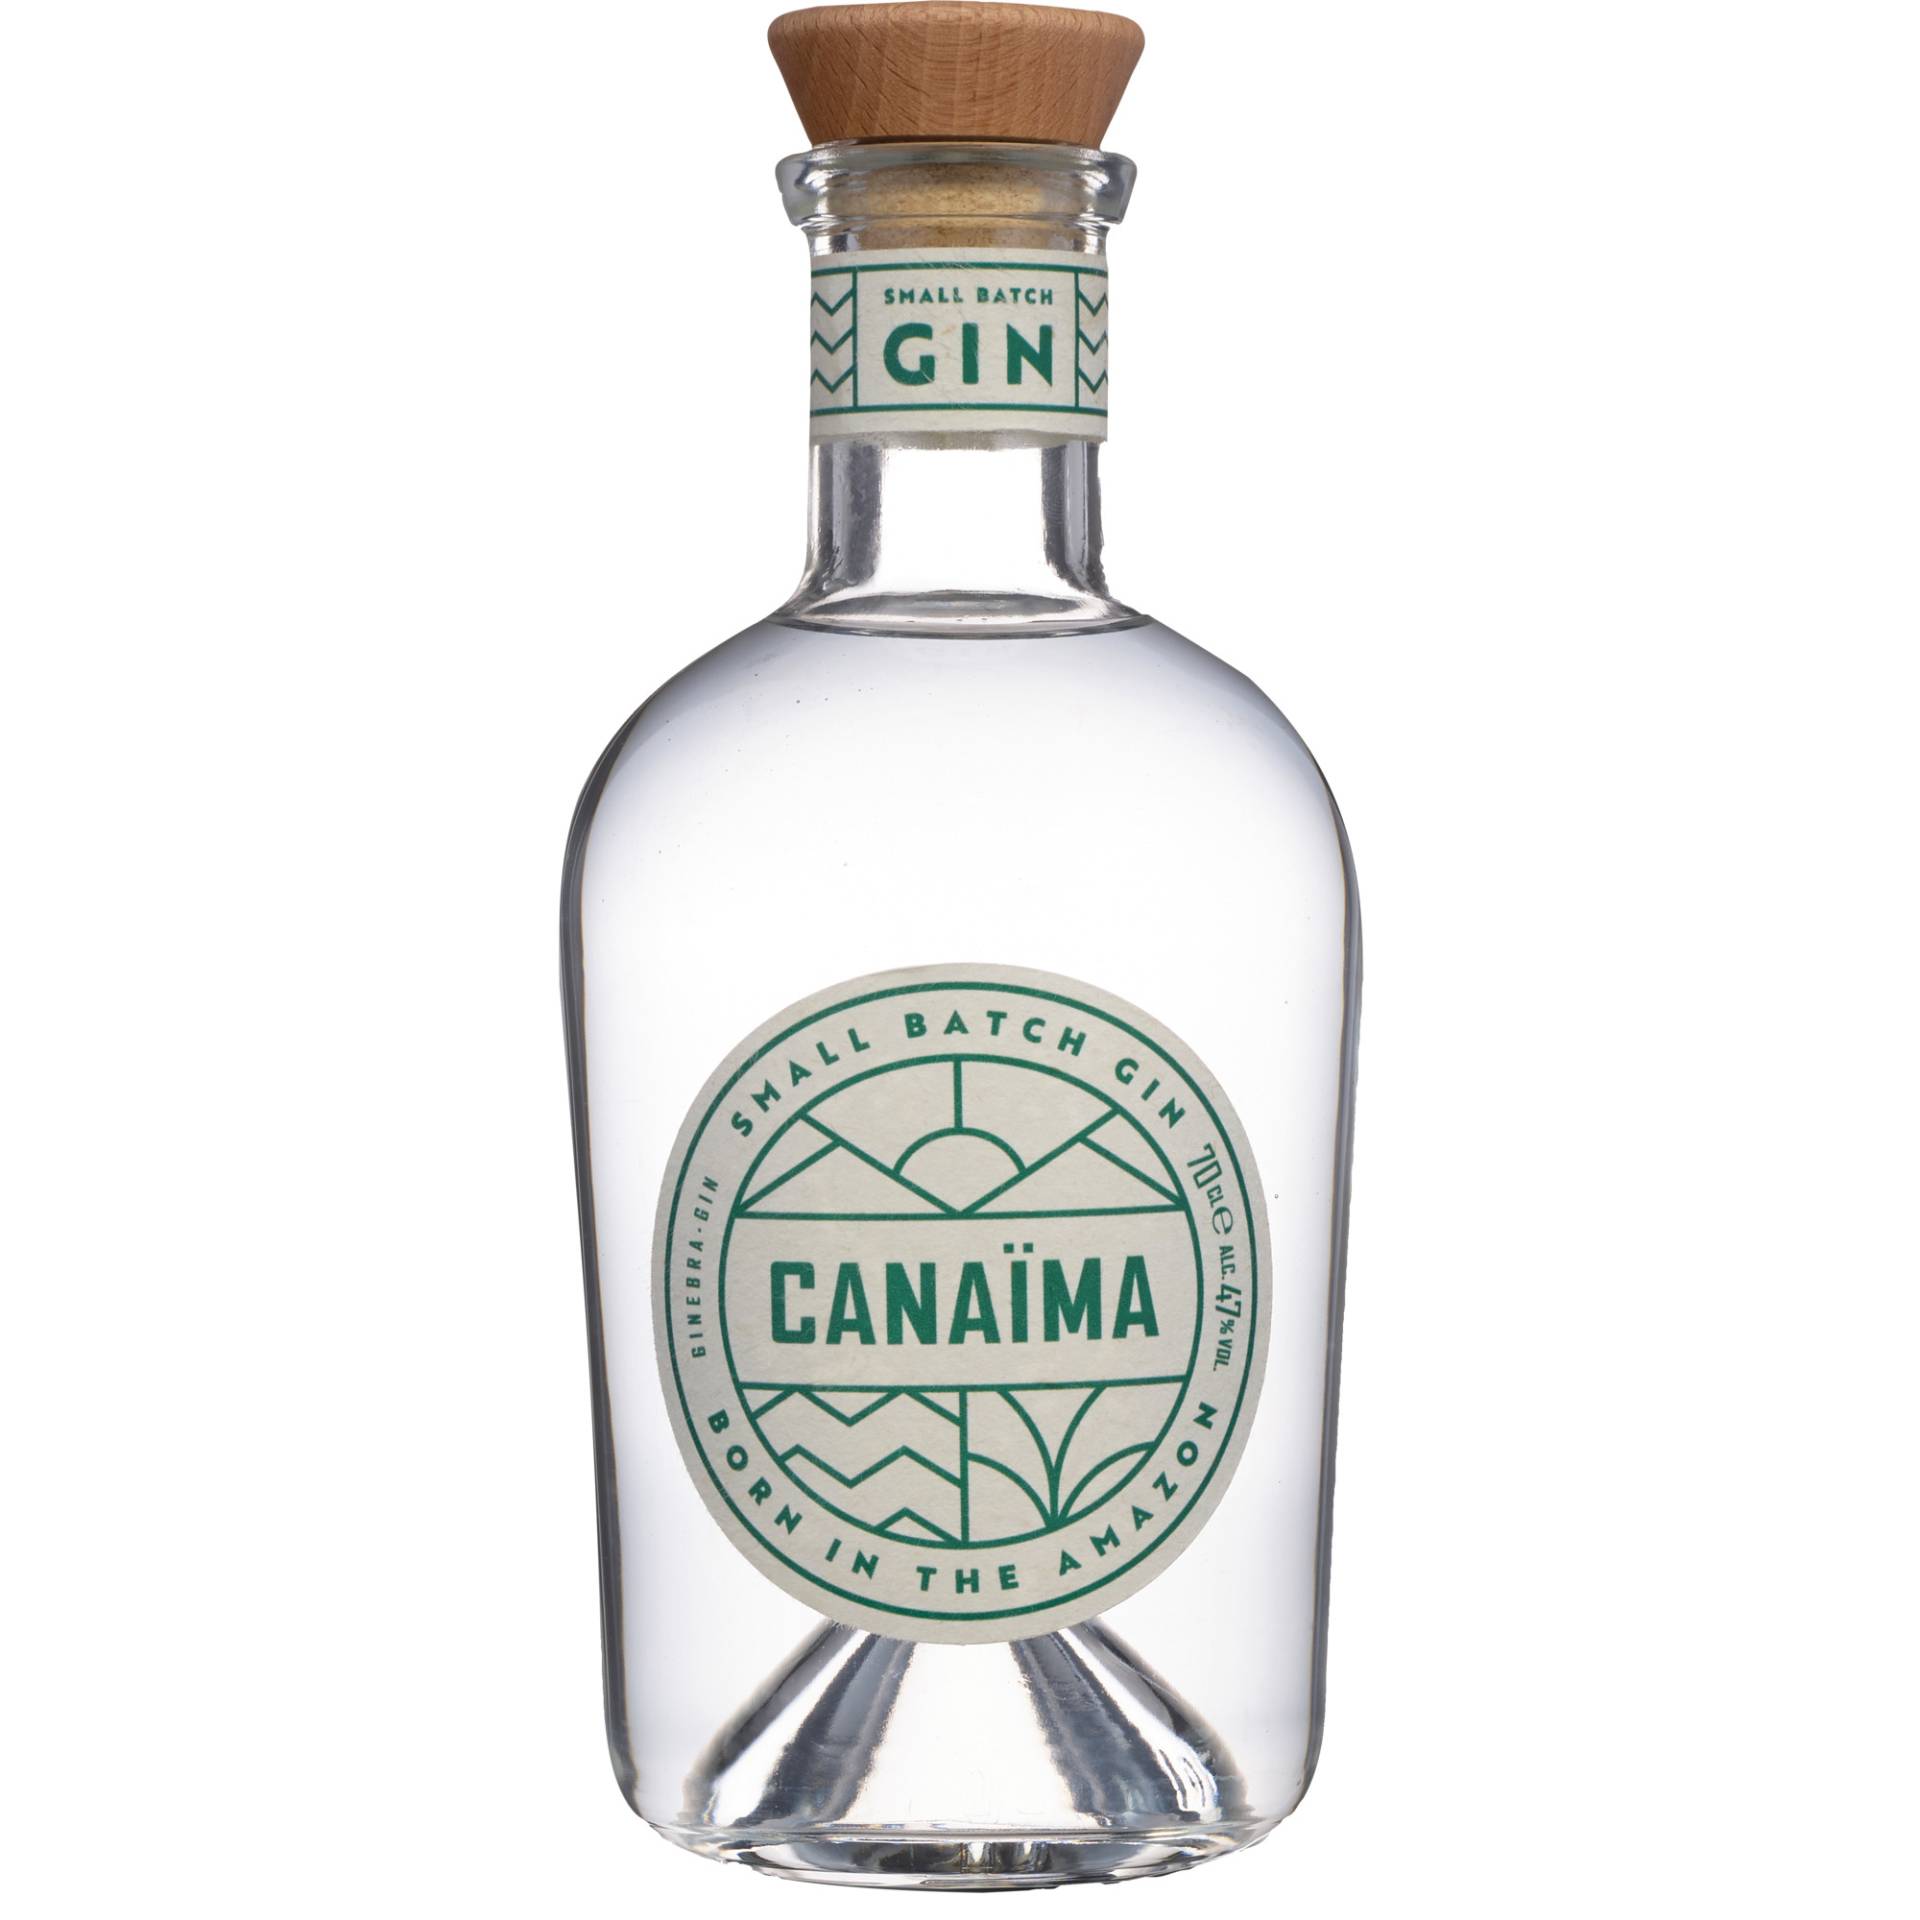 Canaima Small Batch Gin, 0,7 L, 47% Vol., Spirituosen von Sierra Madre GmbH, Rohrstr. 26, 56093 Hagen, Deutschland